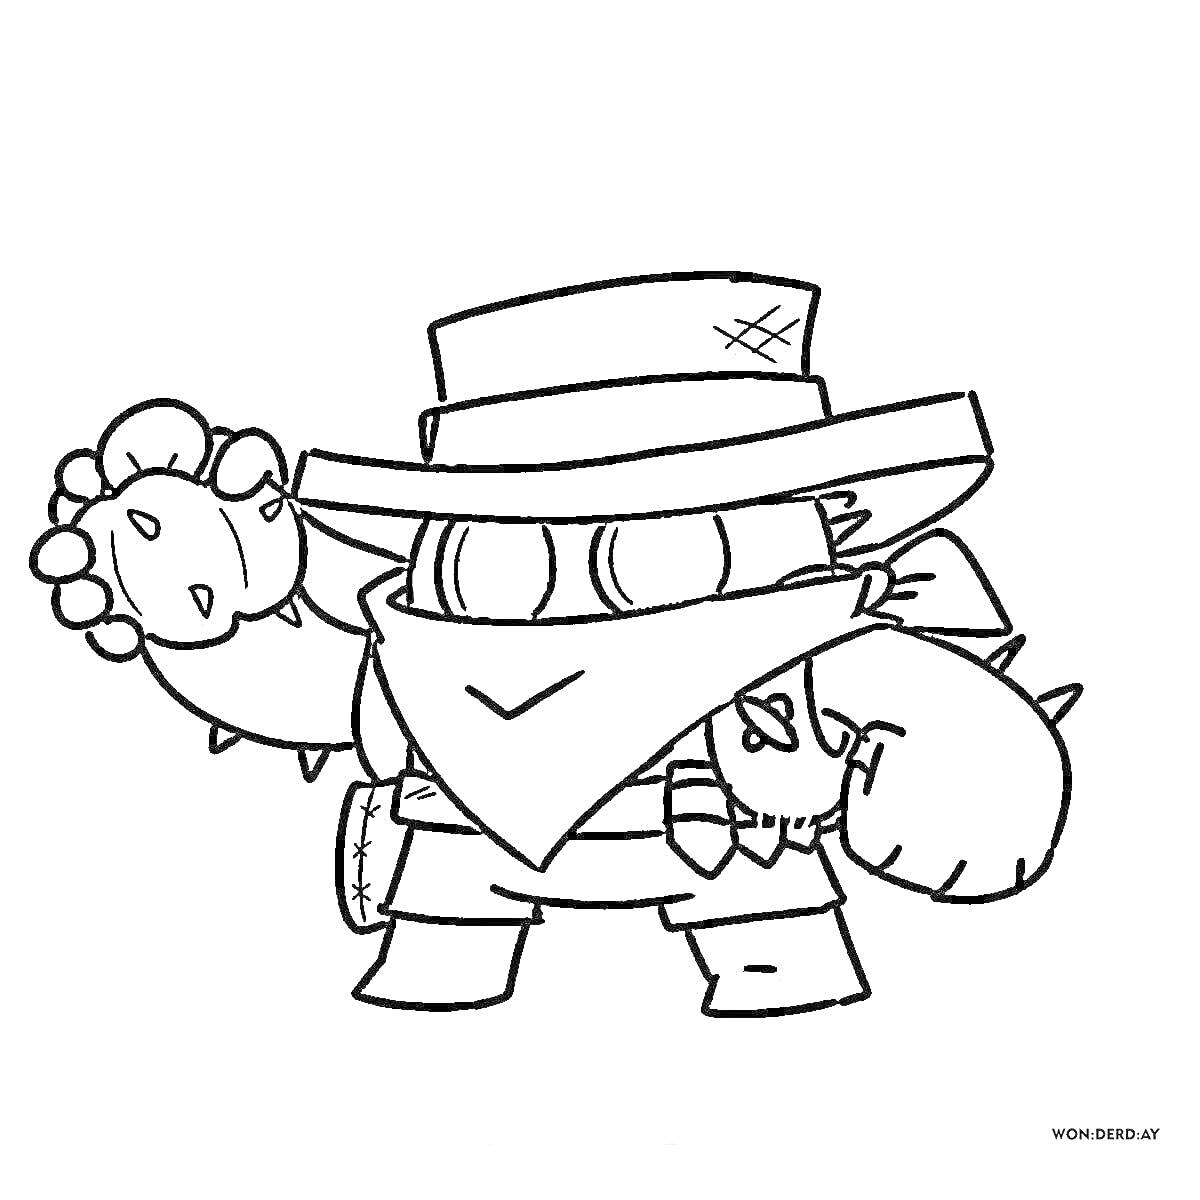 Раскраска Персонаж с широкополой шляпой и маской перед лицом, нарукавниками с шипами, перчатками с шипами, большим шипастым мечом, ремнем и узкими глазками